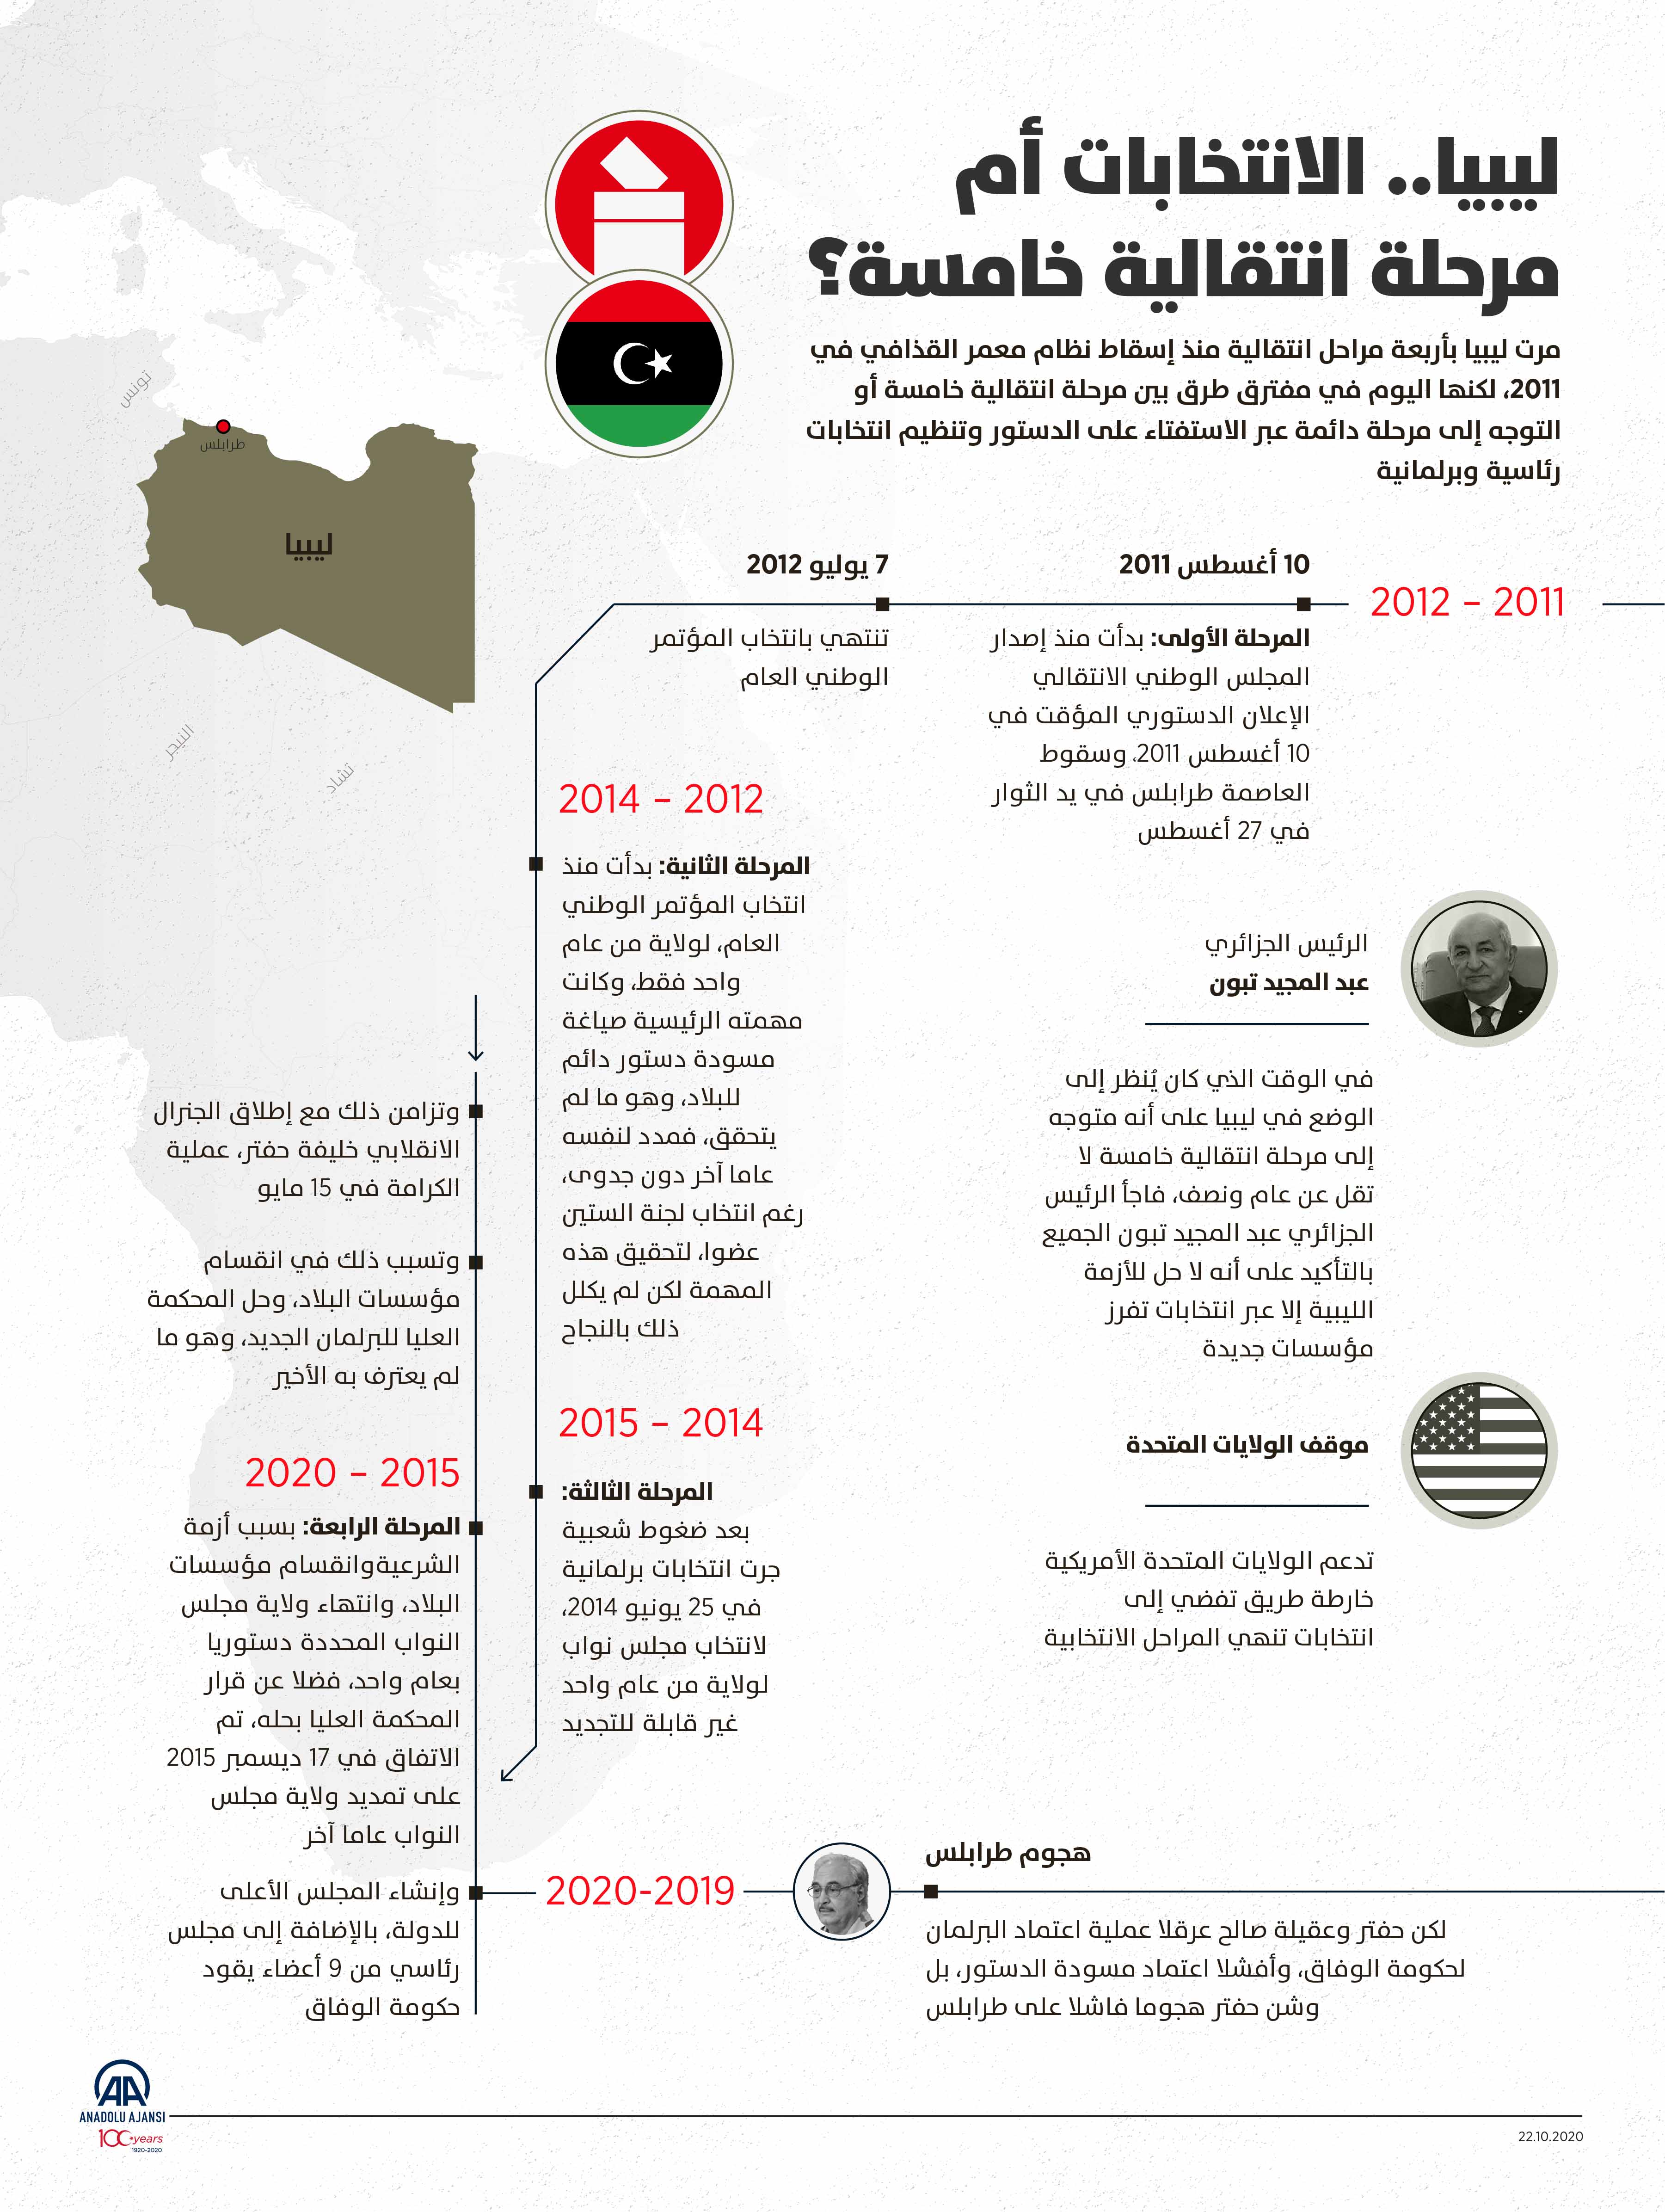 ليبيا.. الانتخابات أم مرحلة انتقالية خامسة؟